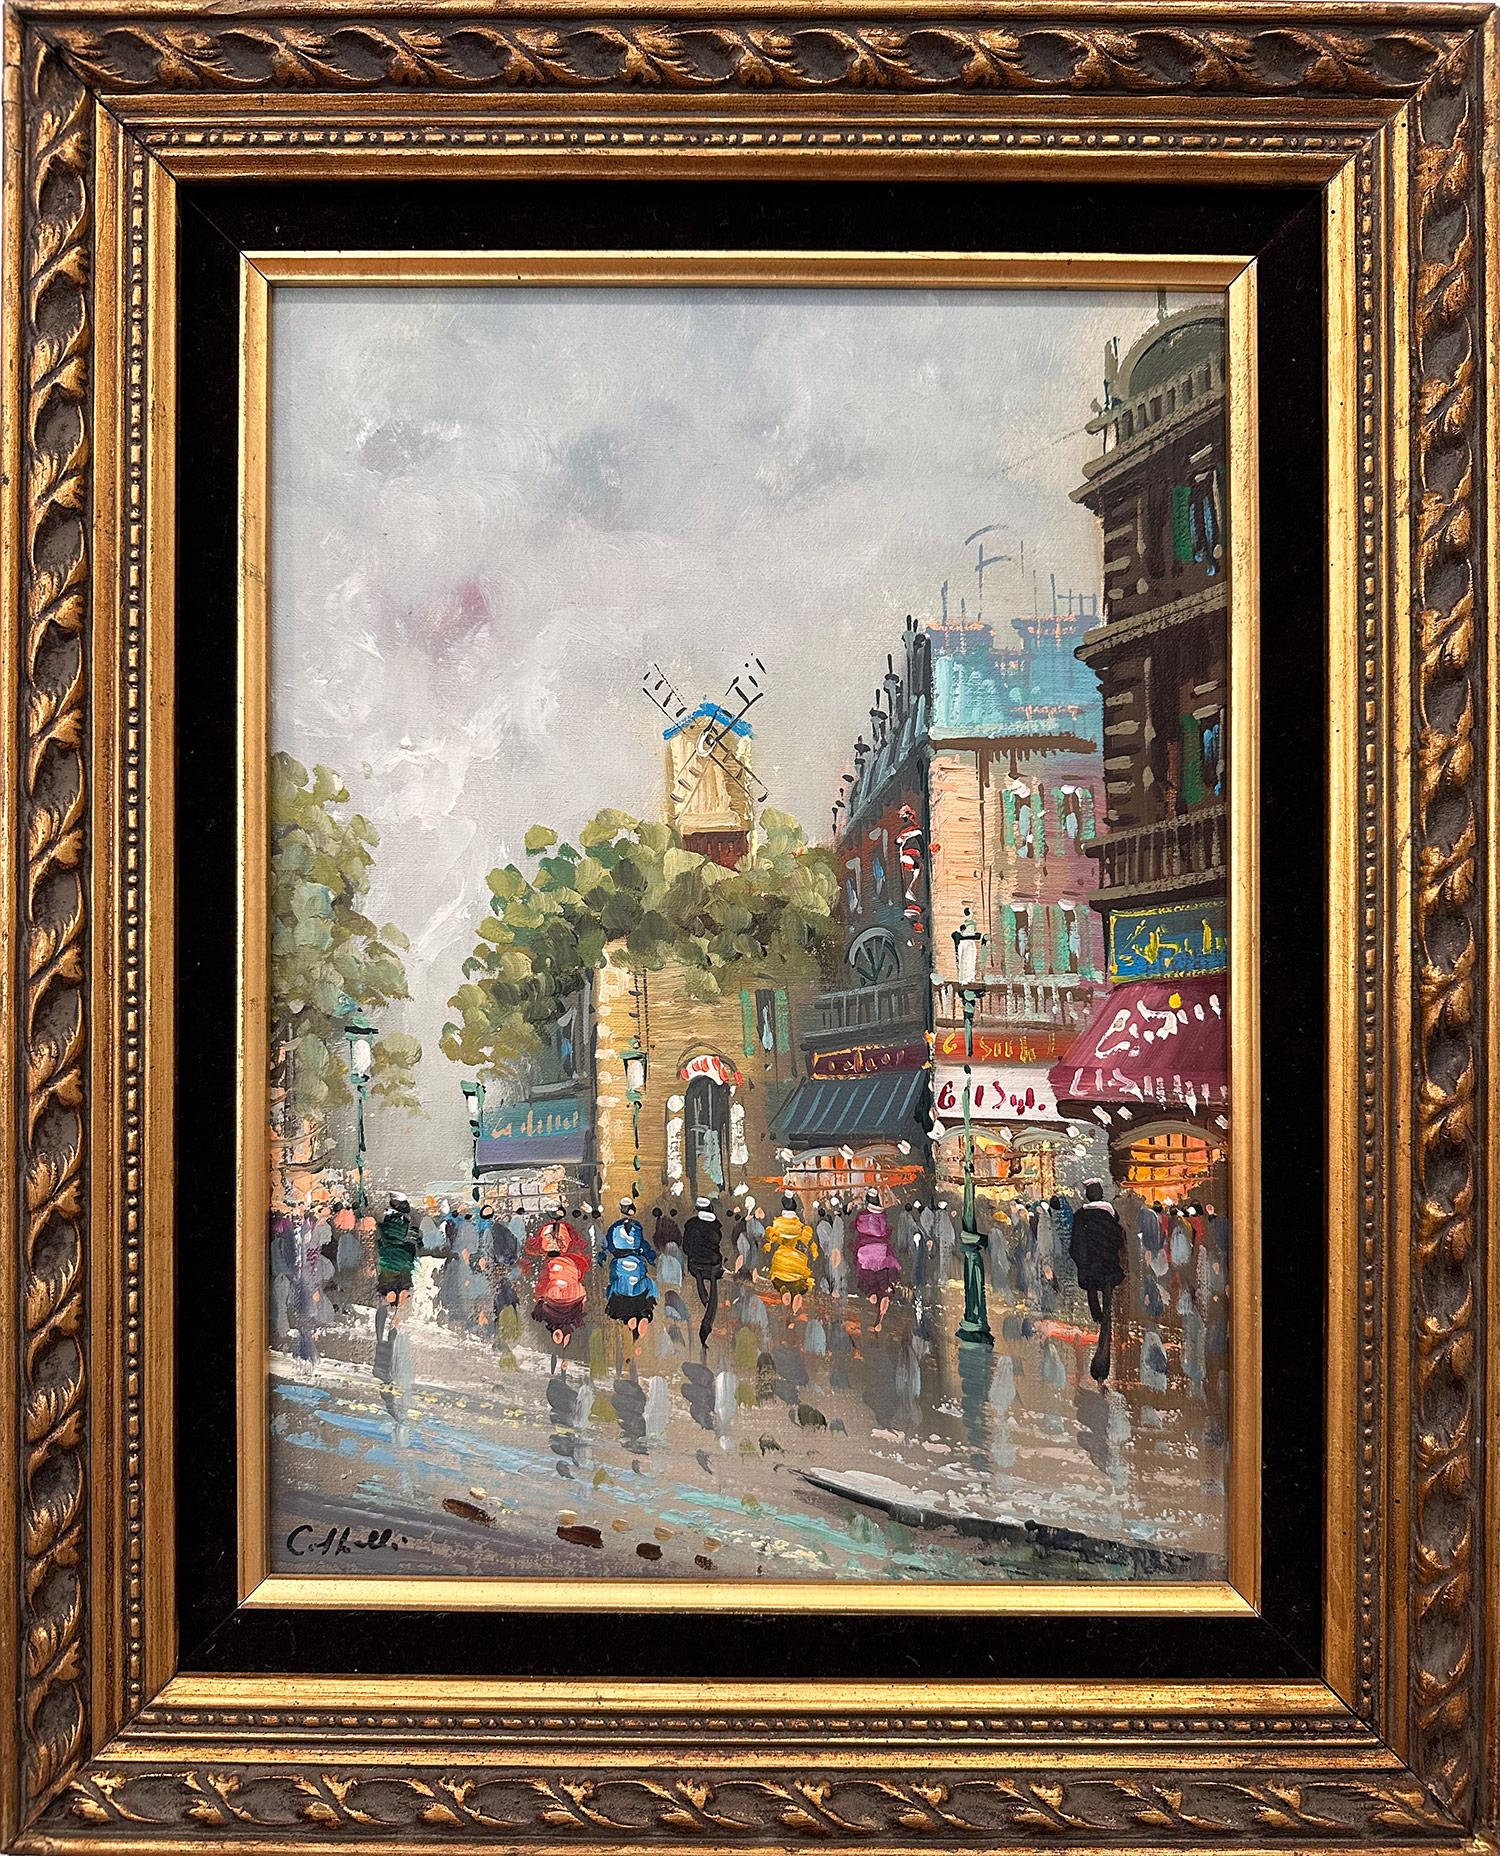 Figurative Painting Unknown - Peinture à l'huile sur toile post-impressionniste du 20e siècle - Scène de rue de café parisienne 